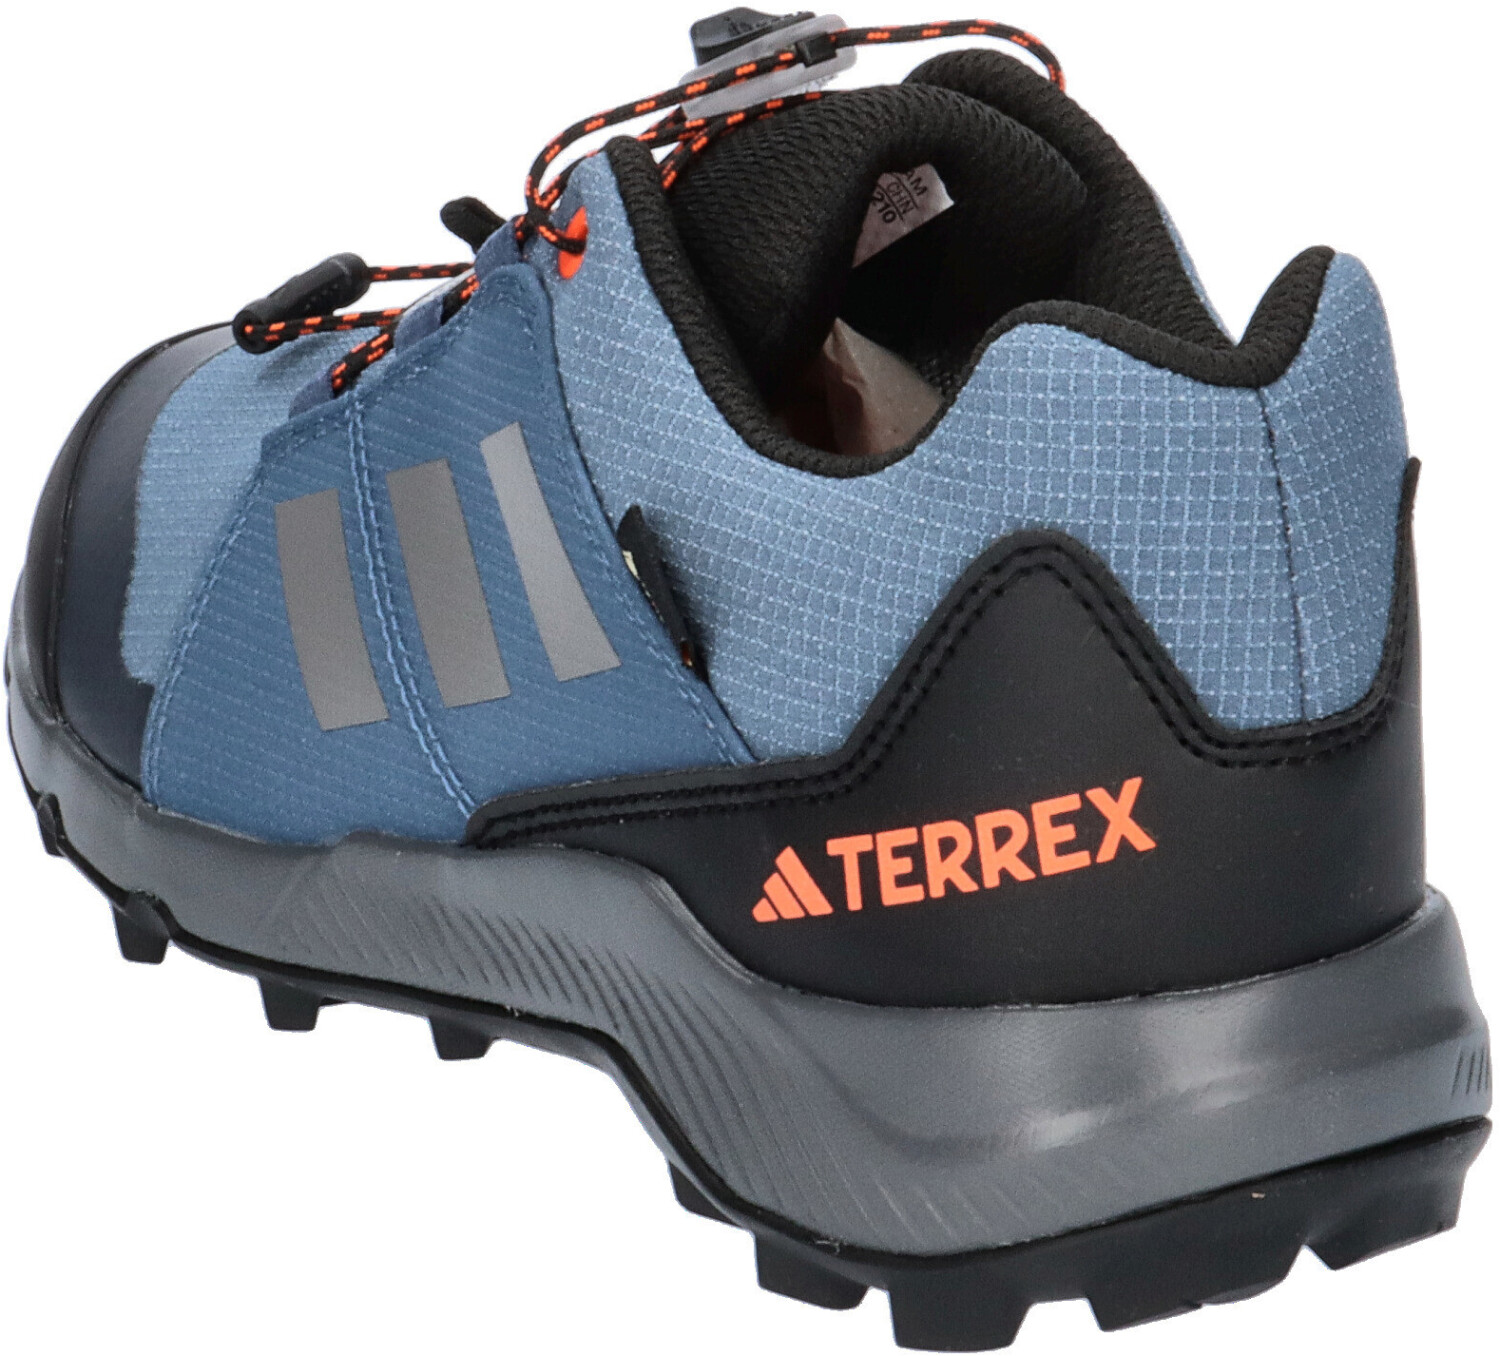 Adidas Terrex Gore-Tex Hiking Kids wonder steel/grey three/impact orange ab  59,95 € | Preisvergleich bei